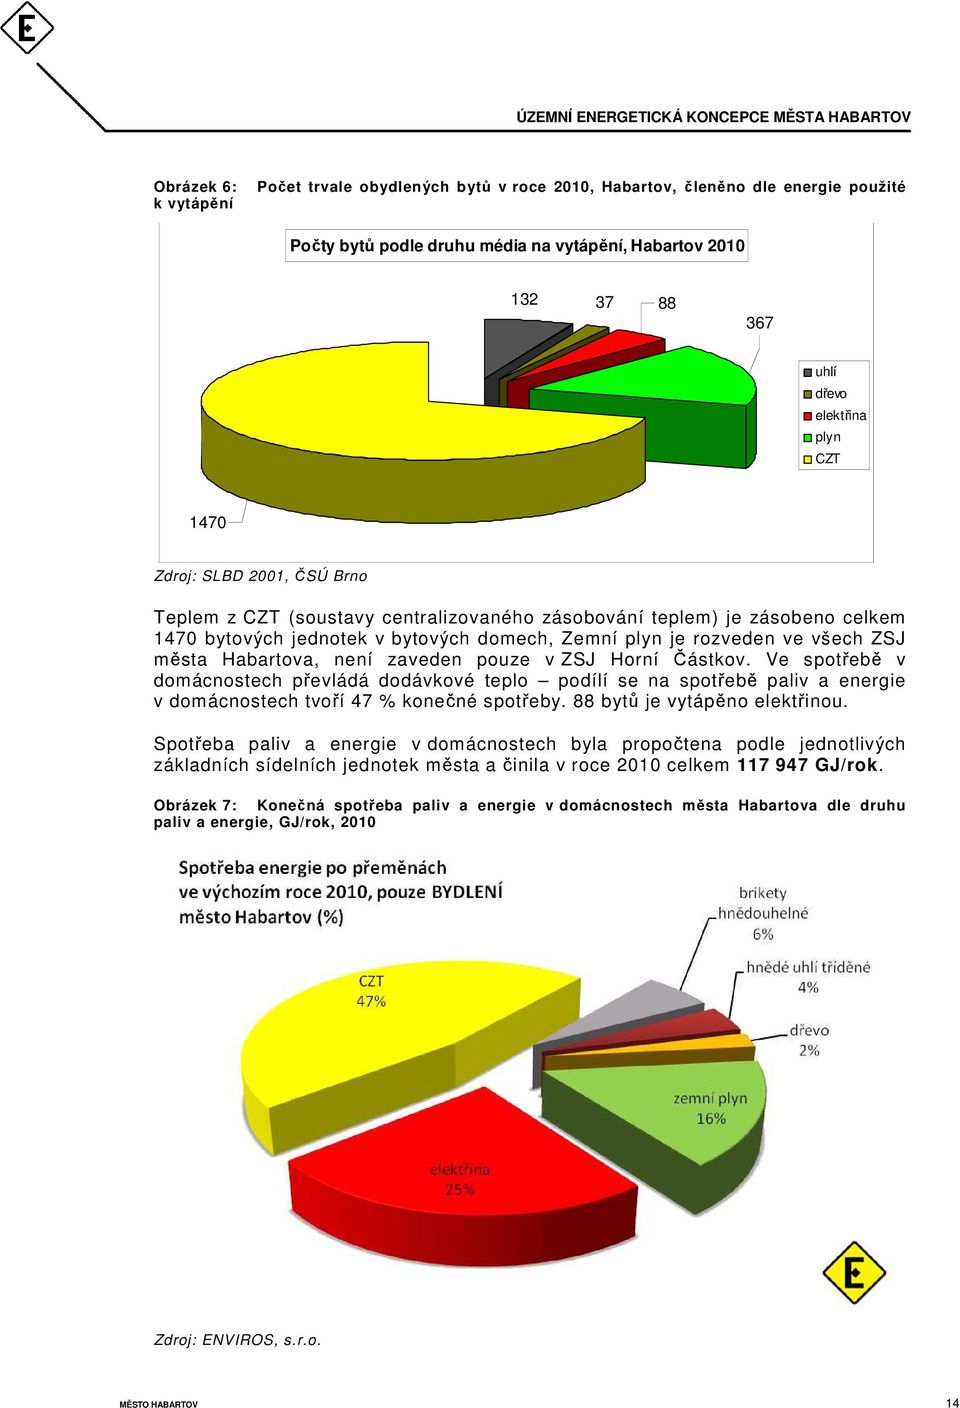 Habartova, není zaveden pouze v ZSJ Horní Částkov. Ve spotřebě v domácnostech převládá dodávkové teplo podílí se na spotřebě paliv a energie v domácnostech tvoří 47 % konečné spotřeby.